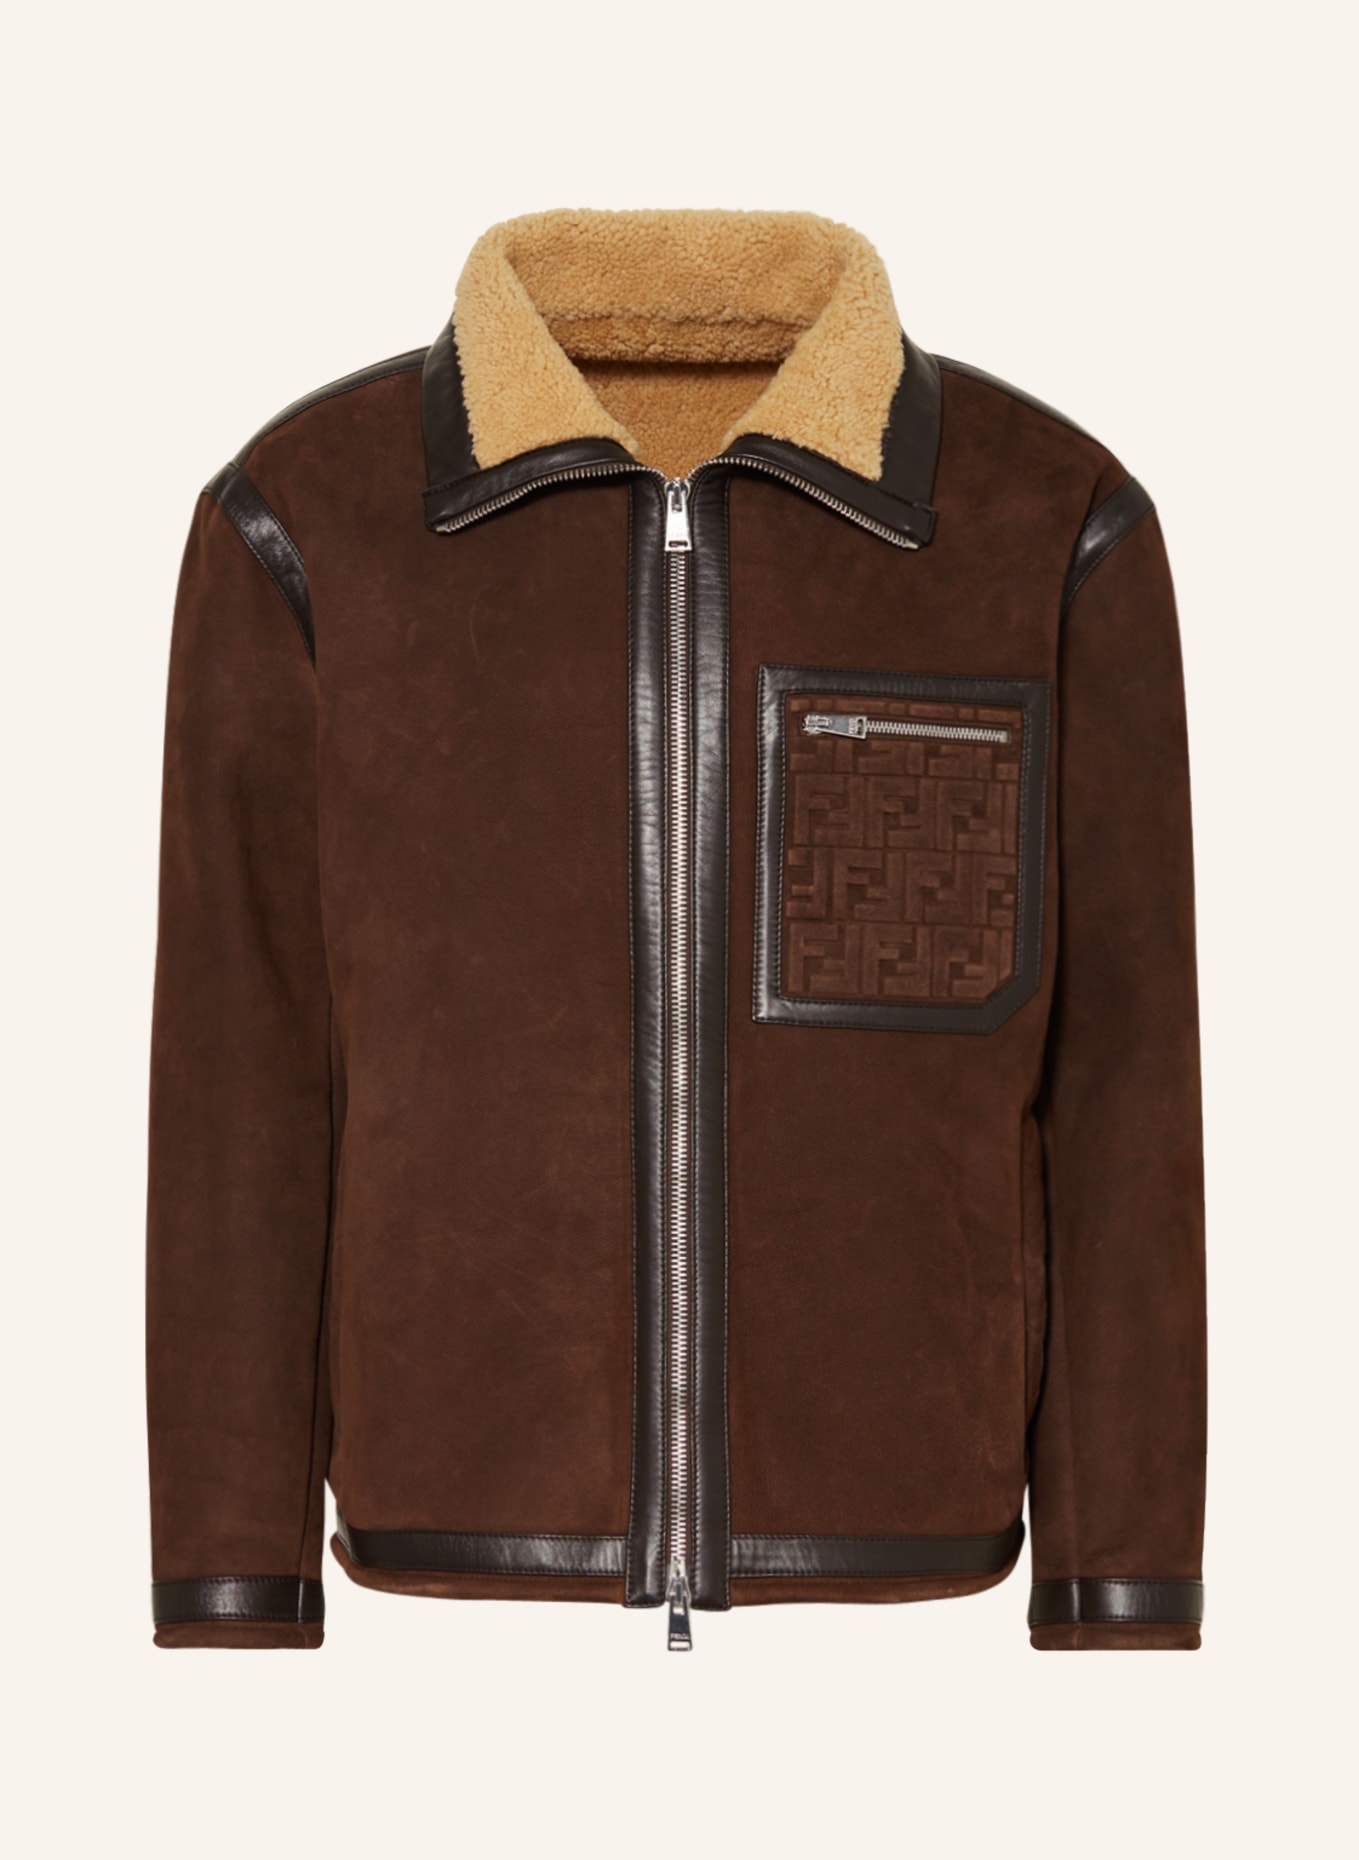 FENDI Leather jacket, Color: DARK BROWN (Image 1)